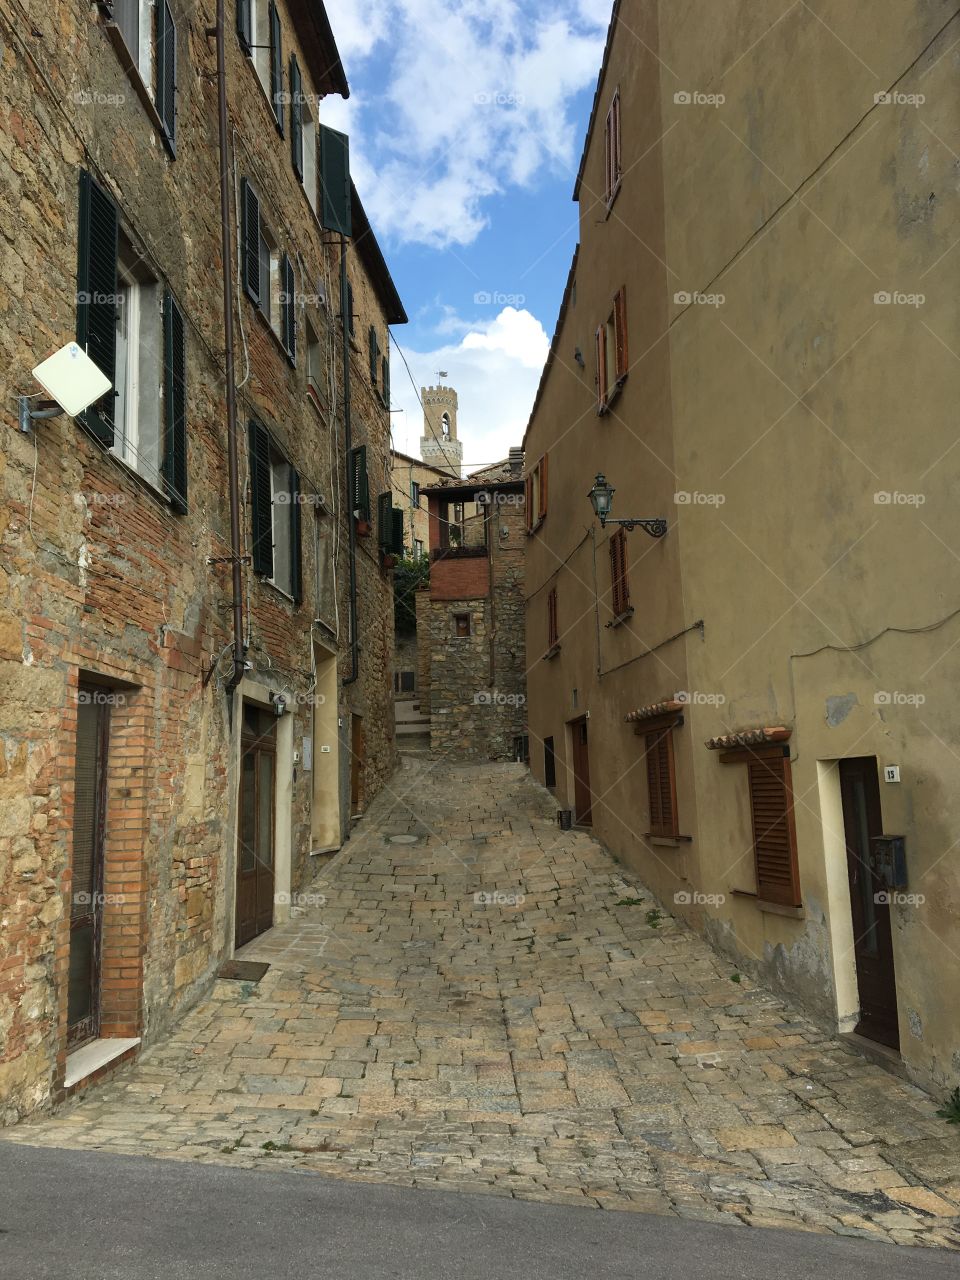 Italian alleyway